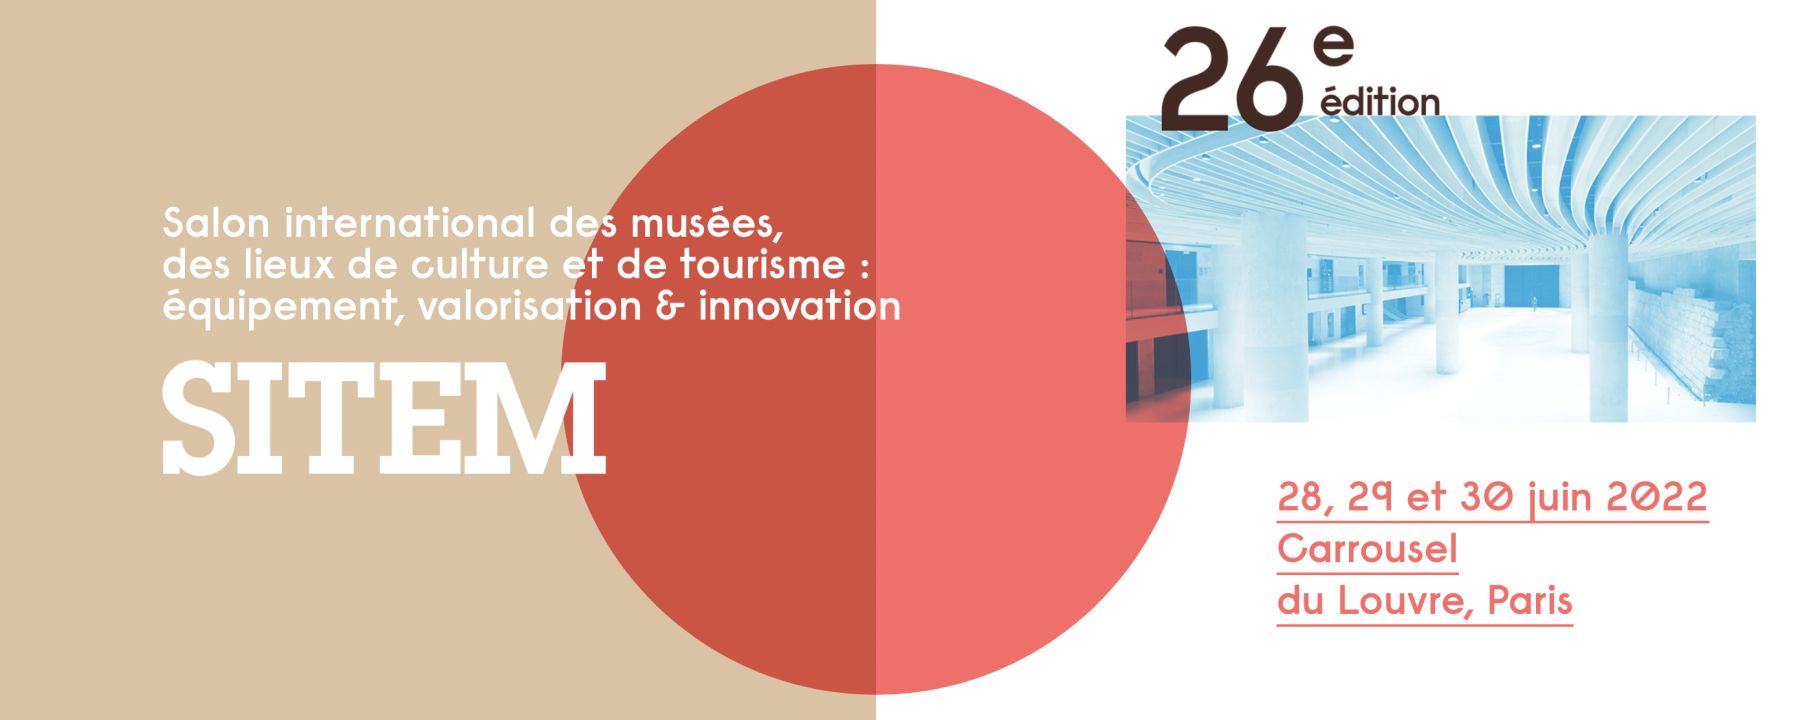 Salon international des musées, des lieux de culture et de tourisme : équipement, valorisation & innovation